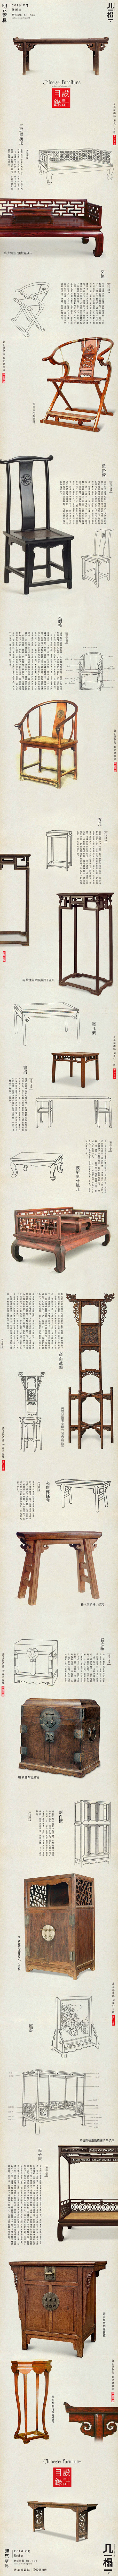 排版
设计目录：明式家具 | 中國美學基...